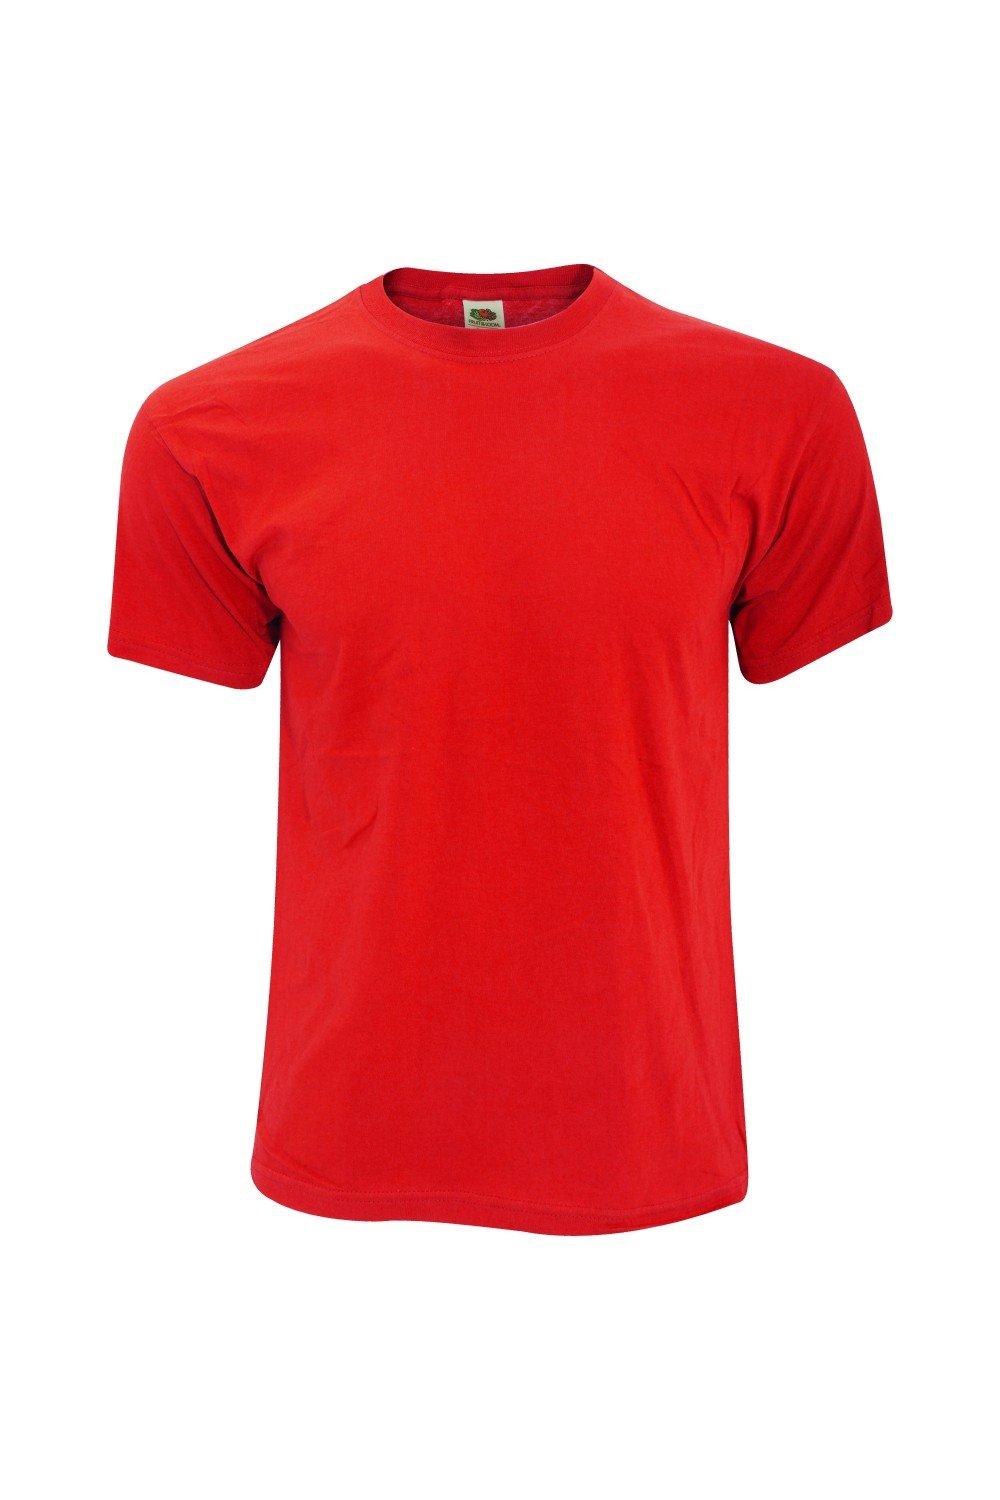 Оригинальная полноразмерная футболка Screen Stars с короткими рукавами Fruit of the Loom, красный